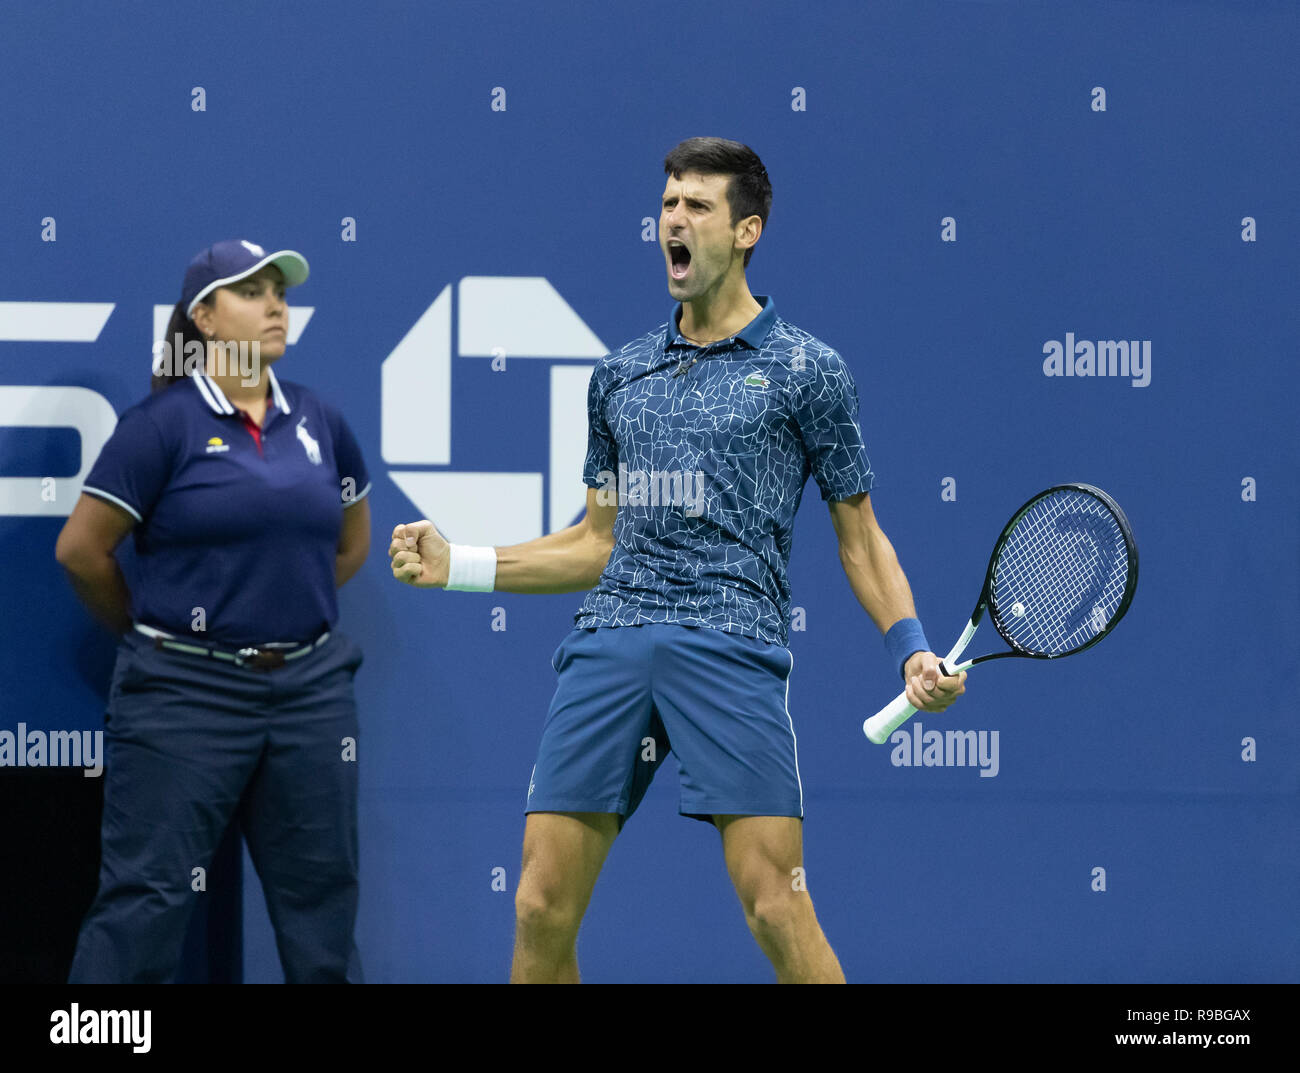 New York, NY - 9 septembre 2018 : Novak Djokovic de Serbie réagit au cours men's single final de l'US Open 2018 contre Juan Martin del Potro l'Argentine à l'USTA Billie Jean King National Tennis Center Banque D'Images